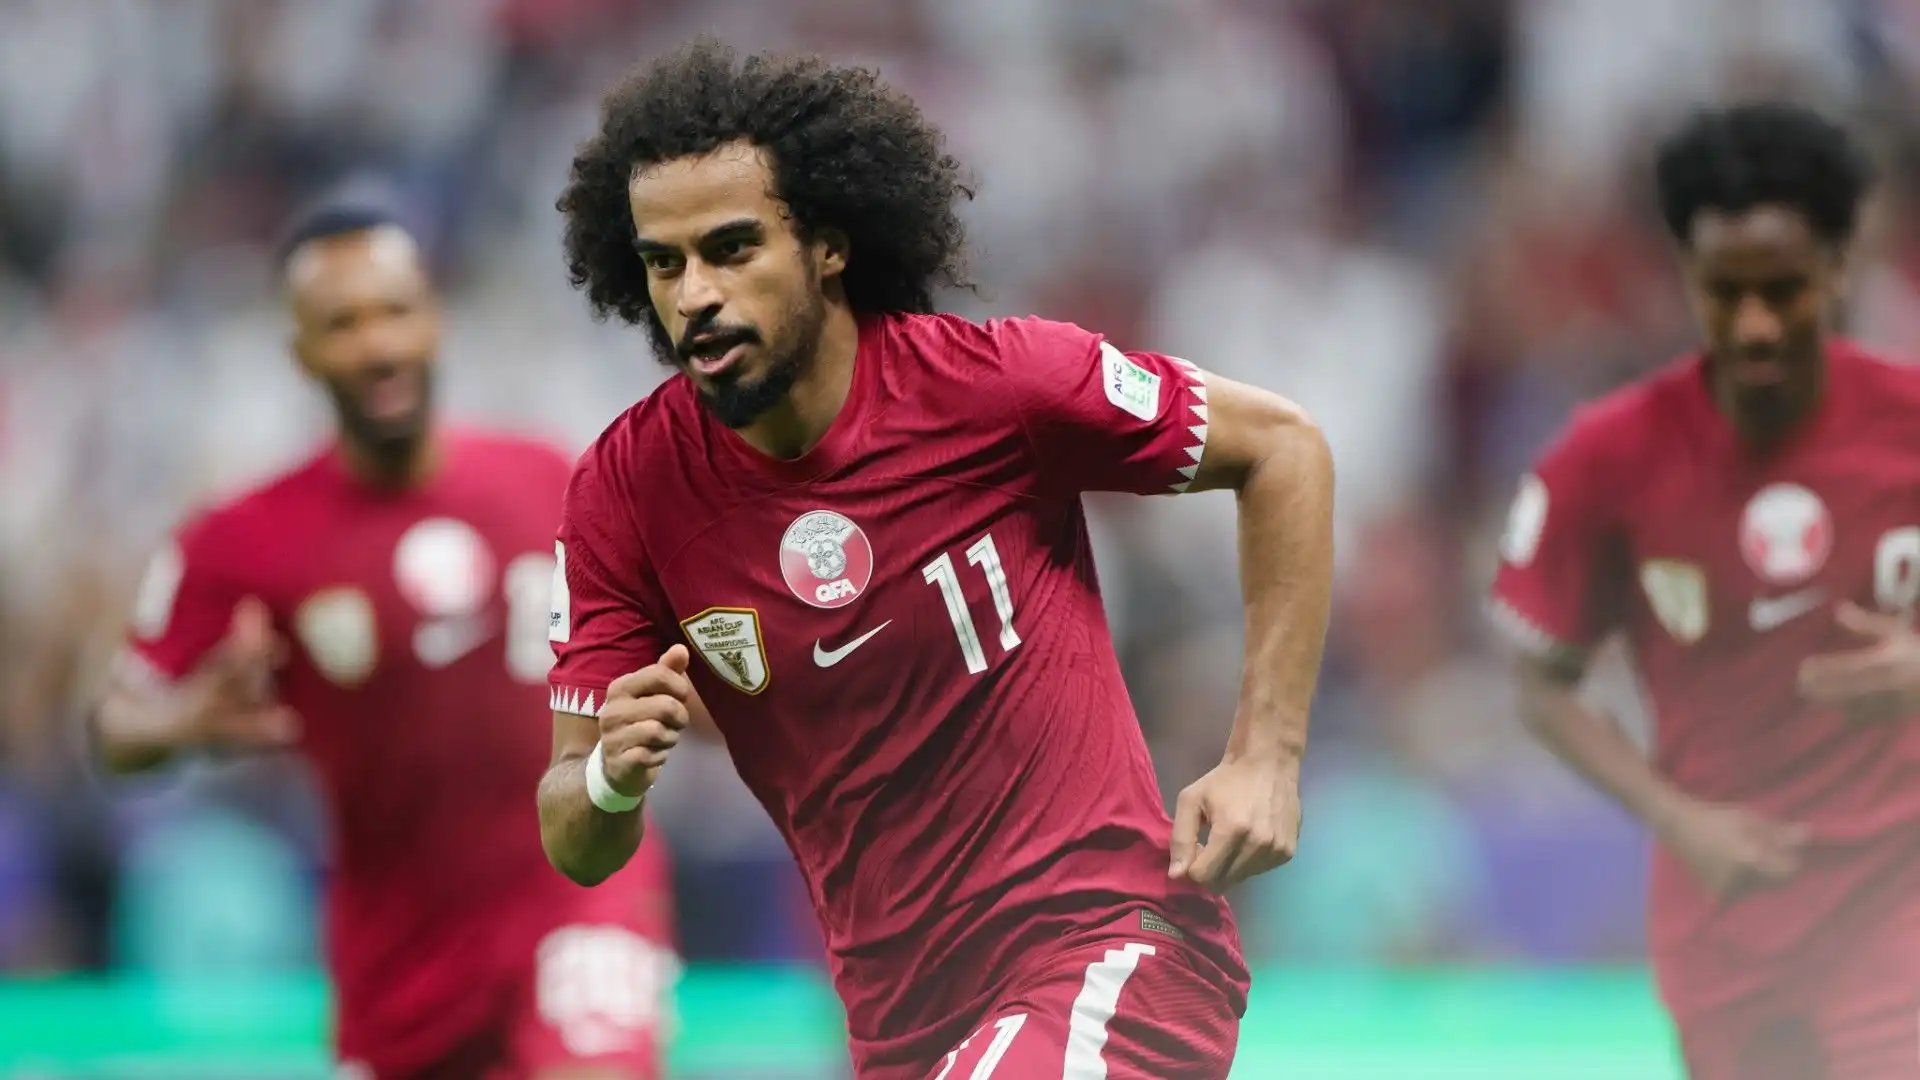 L'attaccante del Qatar condivide lo stesso look con il calciatore brasiliano